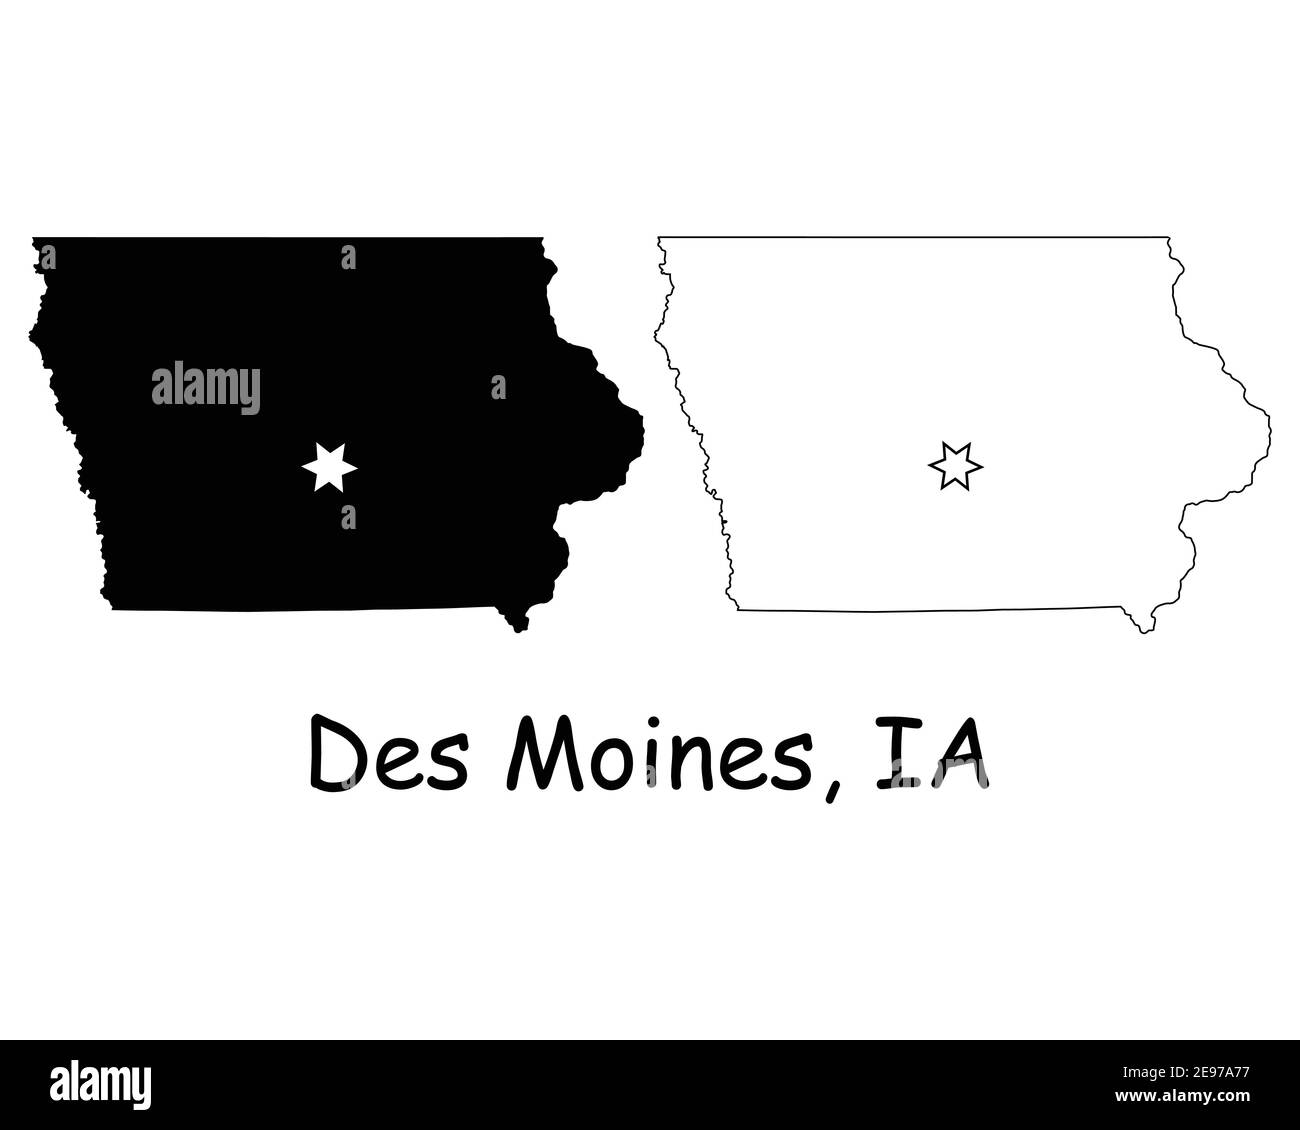 Iowa IA State Map USA mit Capital City Star in des Moines. Schwarze Silhouette und Umriss isoliert auf weißem Hintergrund. EPS-Vektor Stock Vektor